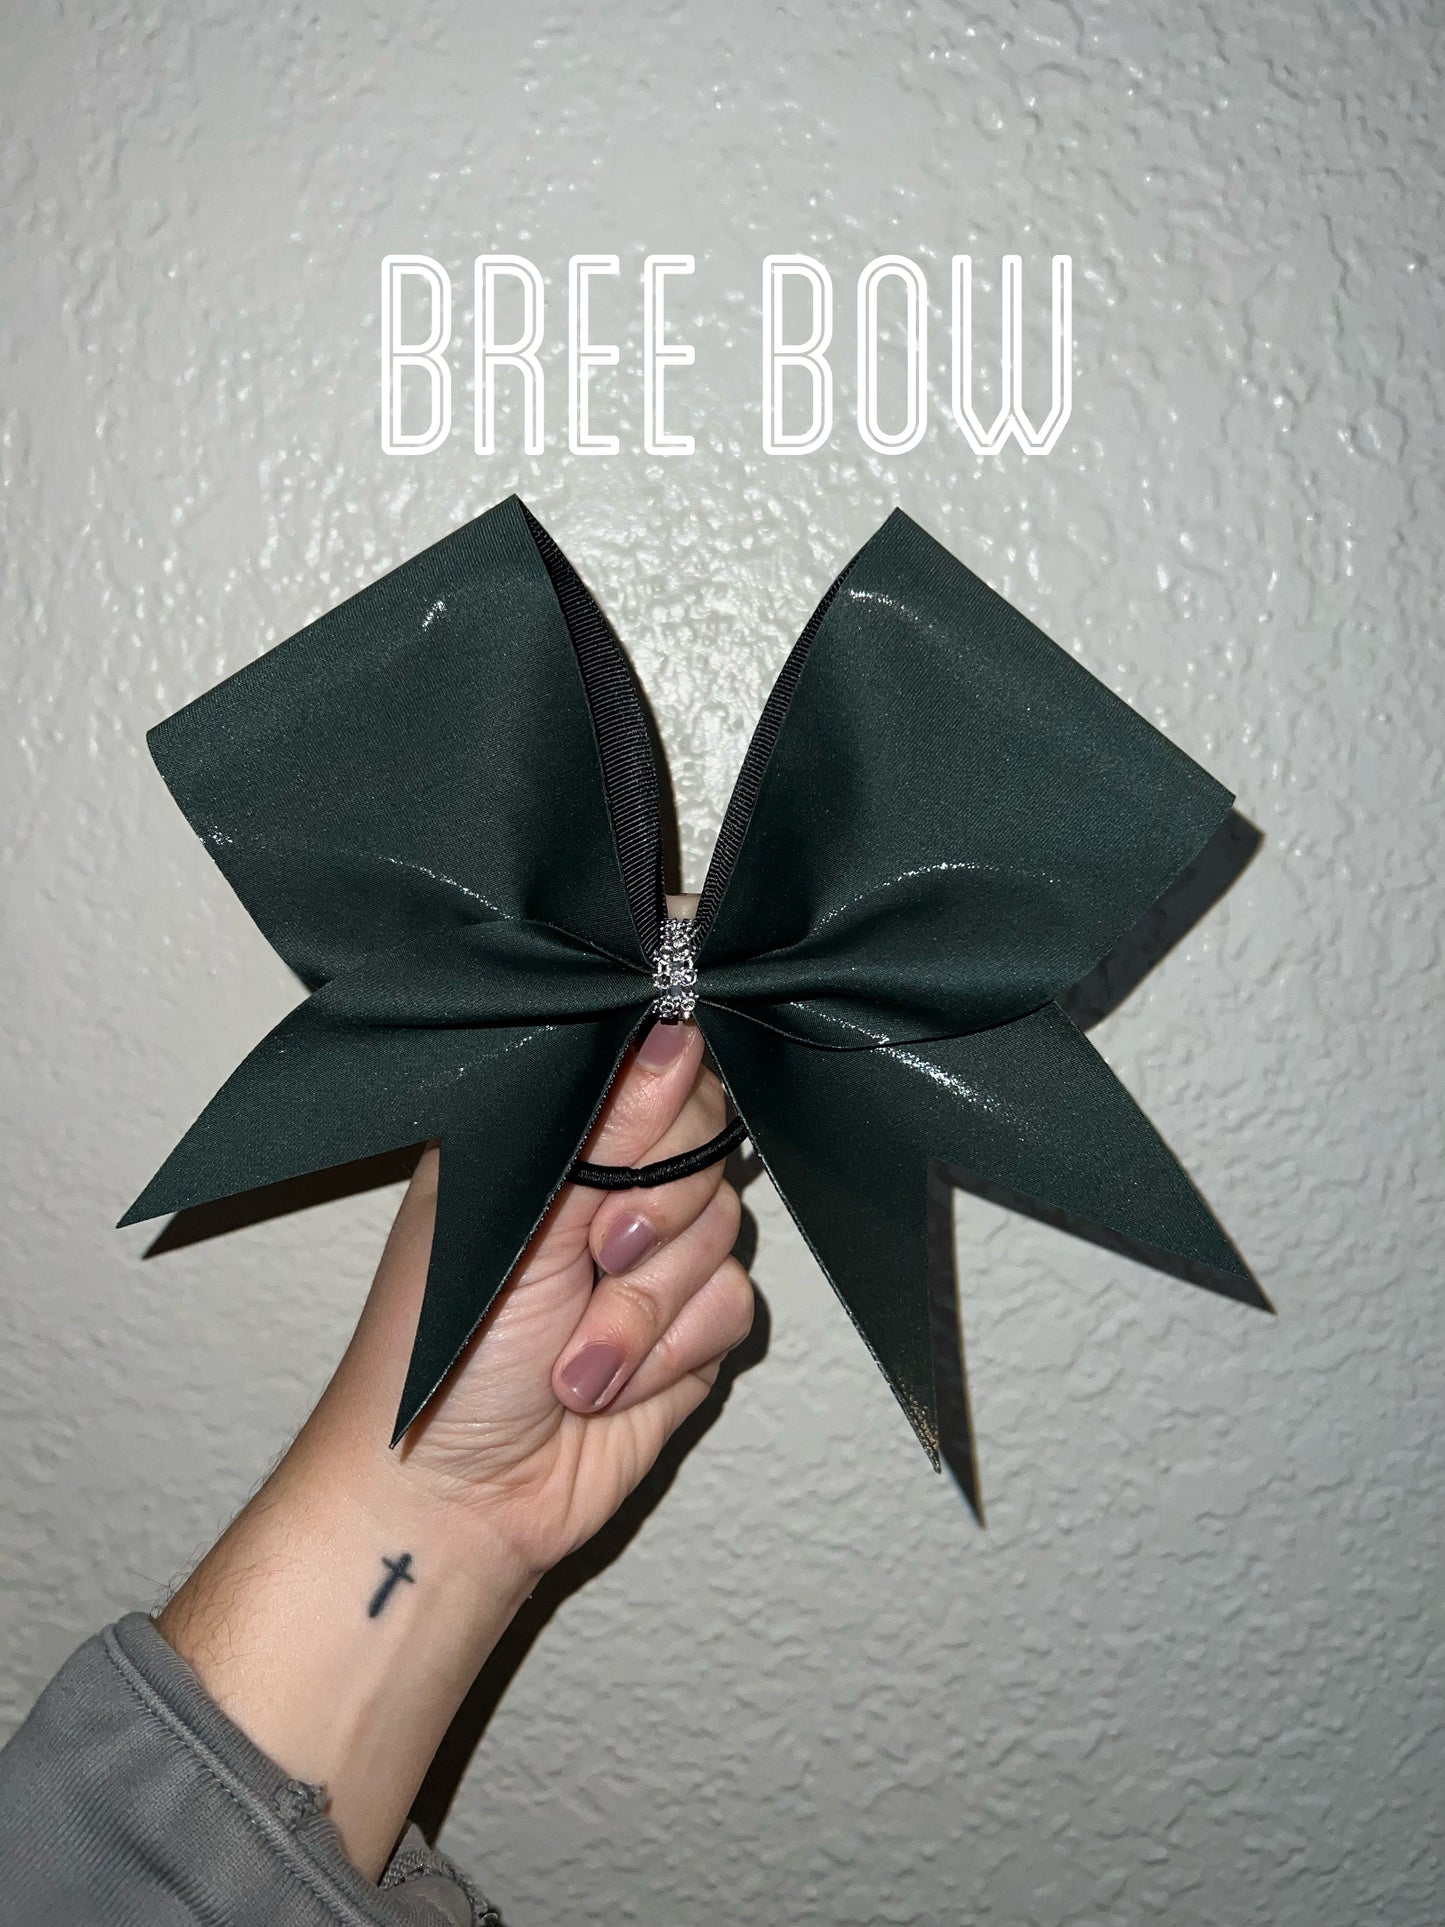 Bree Bow